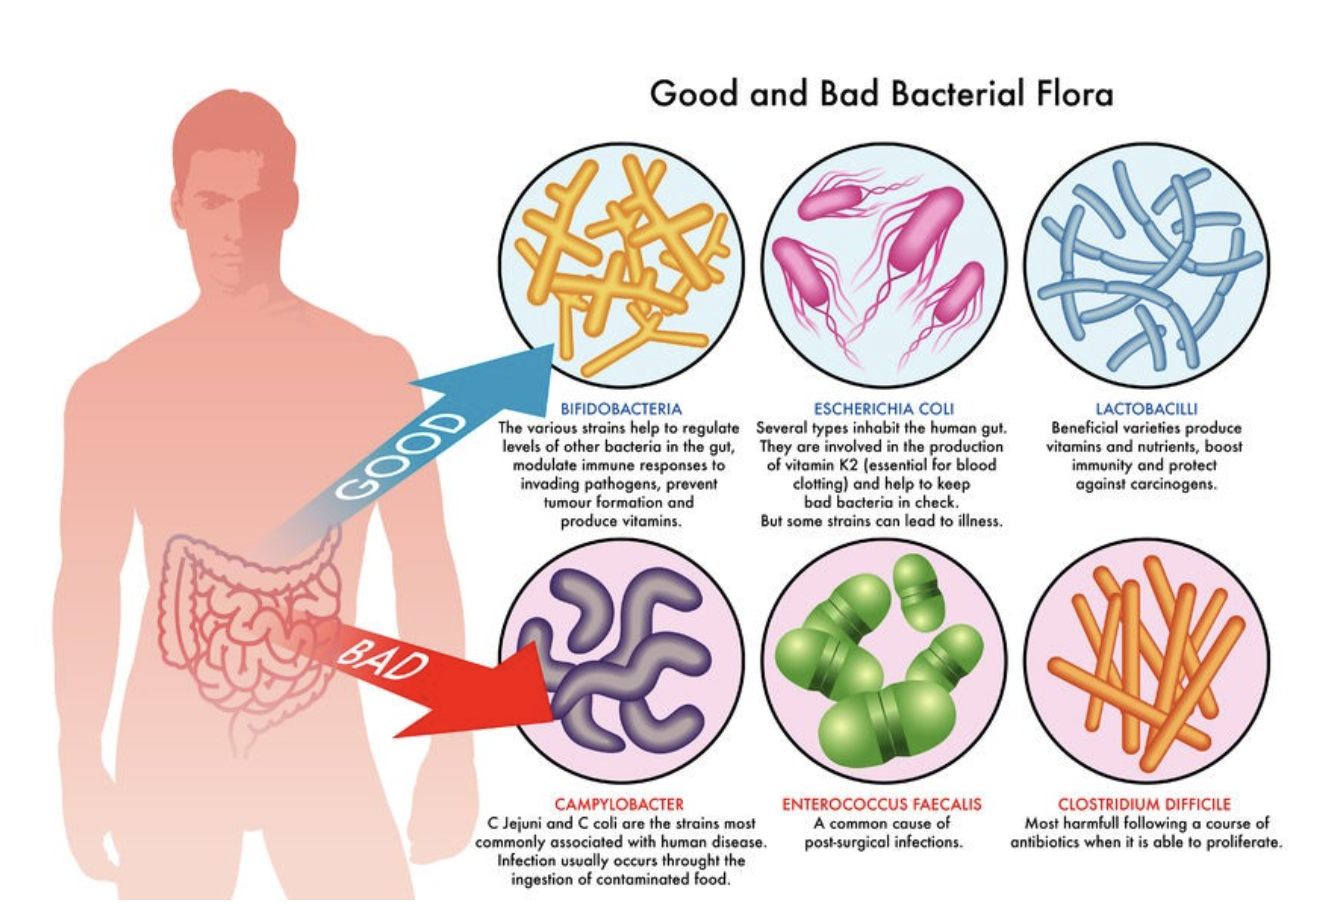 Certain strains of Lactobacillus and Bifidobacterium